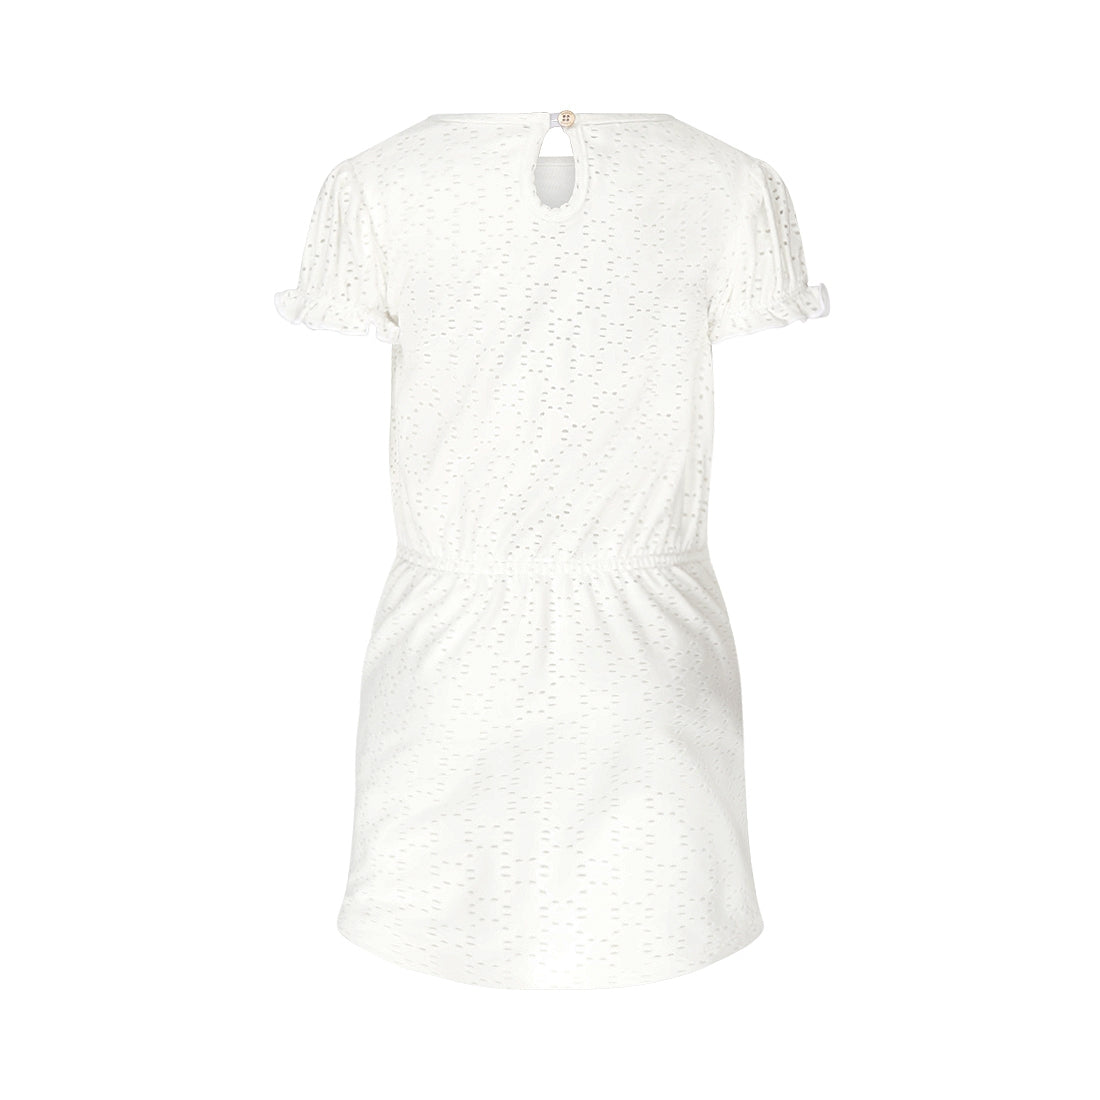 Meisjes Dress ss van Koko Noko in de kleur  Off white in maat 128.